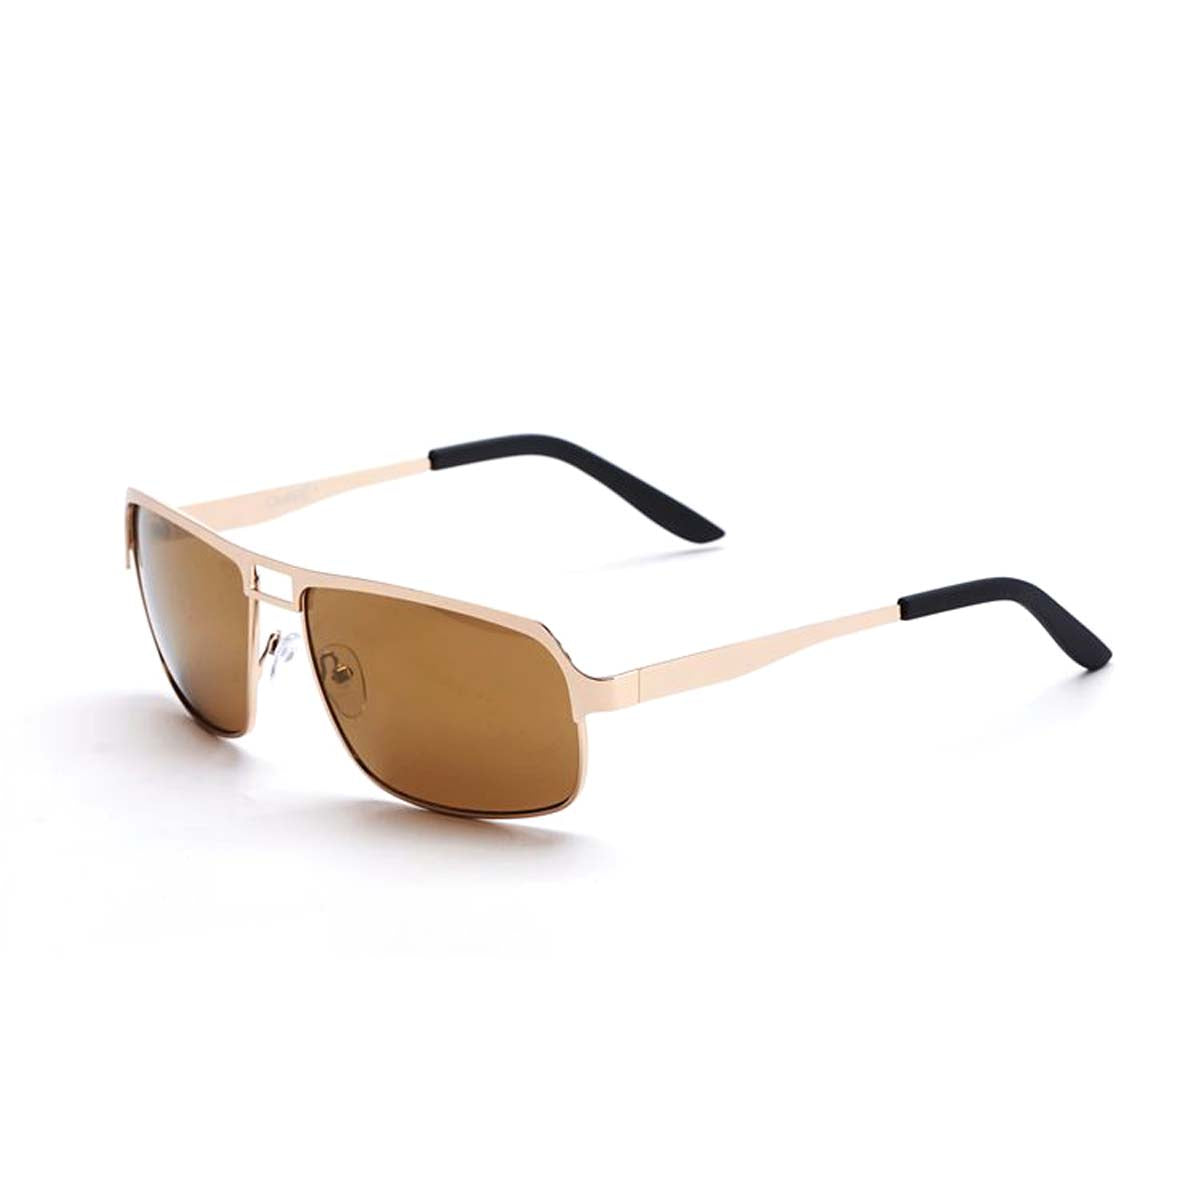 Ombre Gold Colored Design Sunglasses